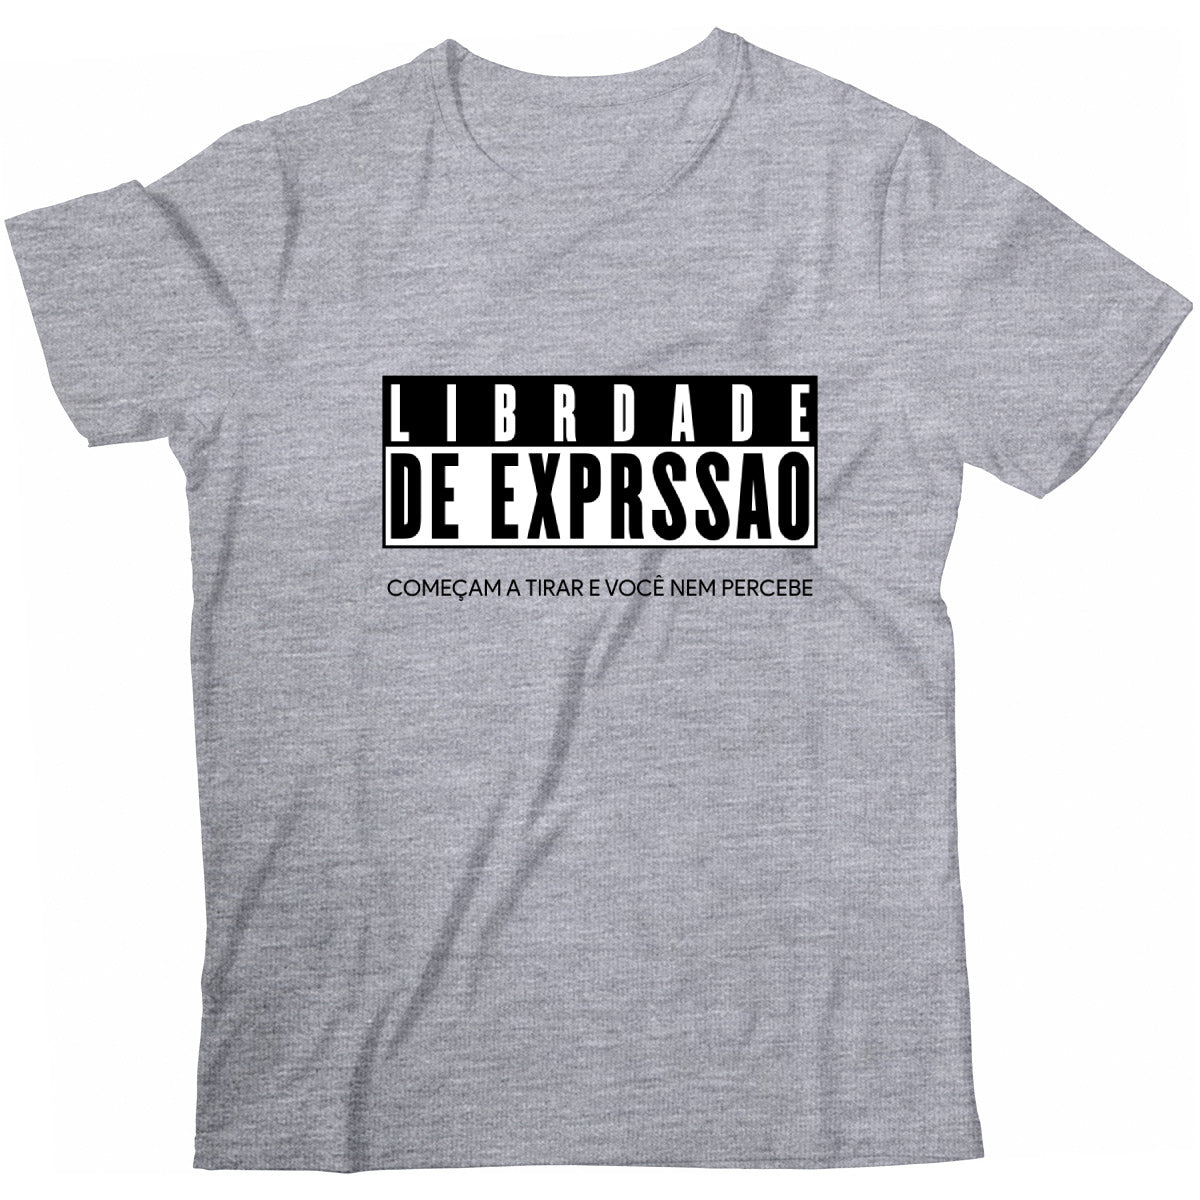 Camiseta - Librdade de expresso